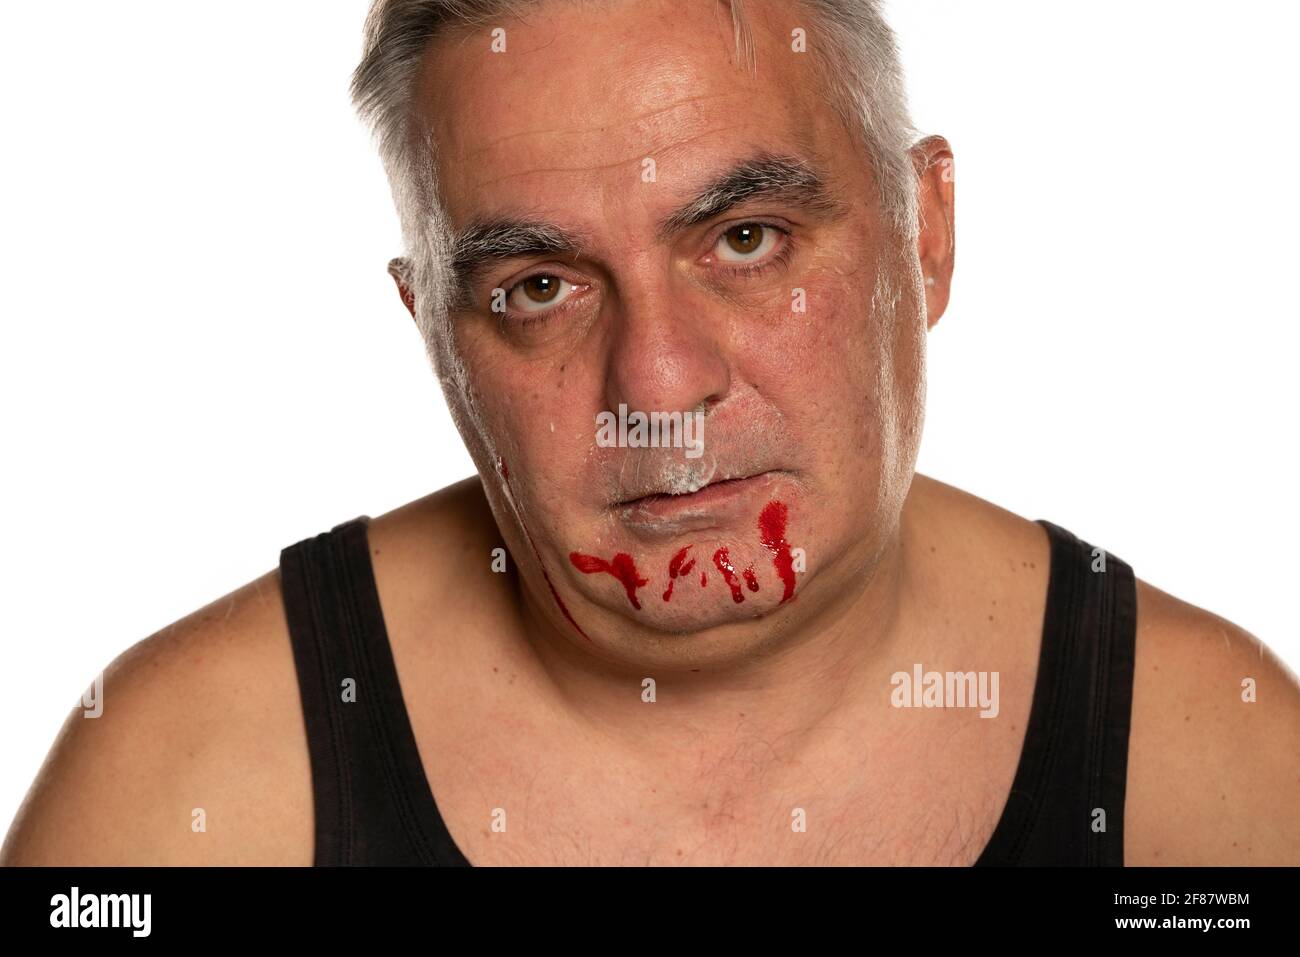 Mann beim Rasieren geschnitten mit schmerzhaften Gesichtsausdruck  Stockfotografie - Alamy